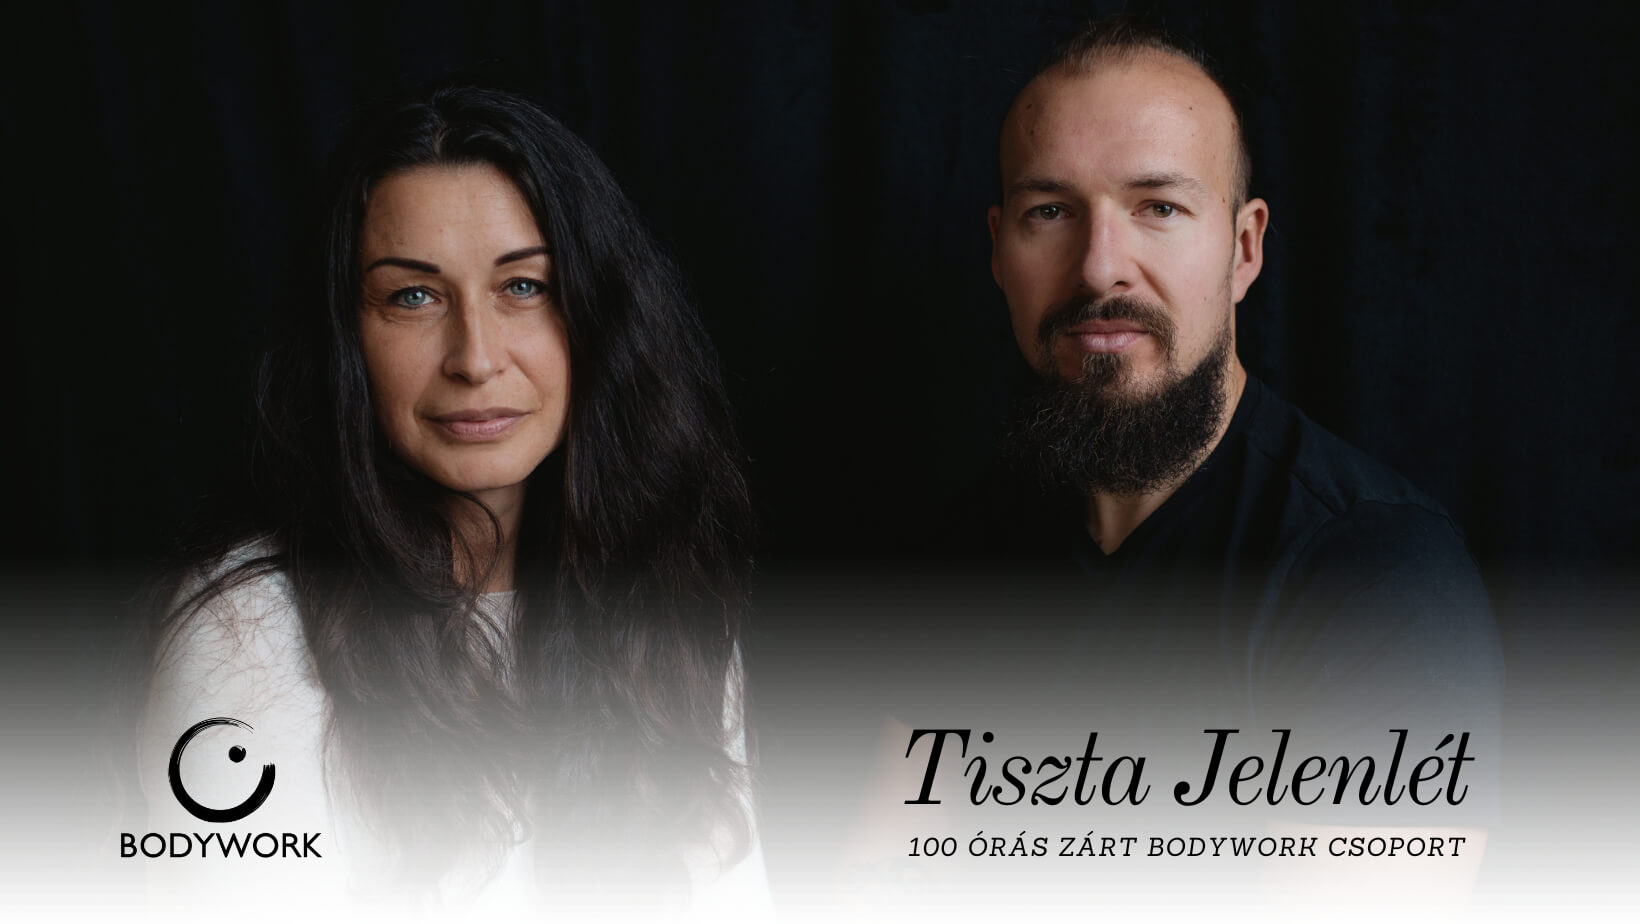 Tiszta Jelenlét - Bodywork csoport Mitli Attila és Vári Mariann vezetésével